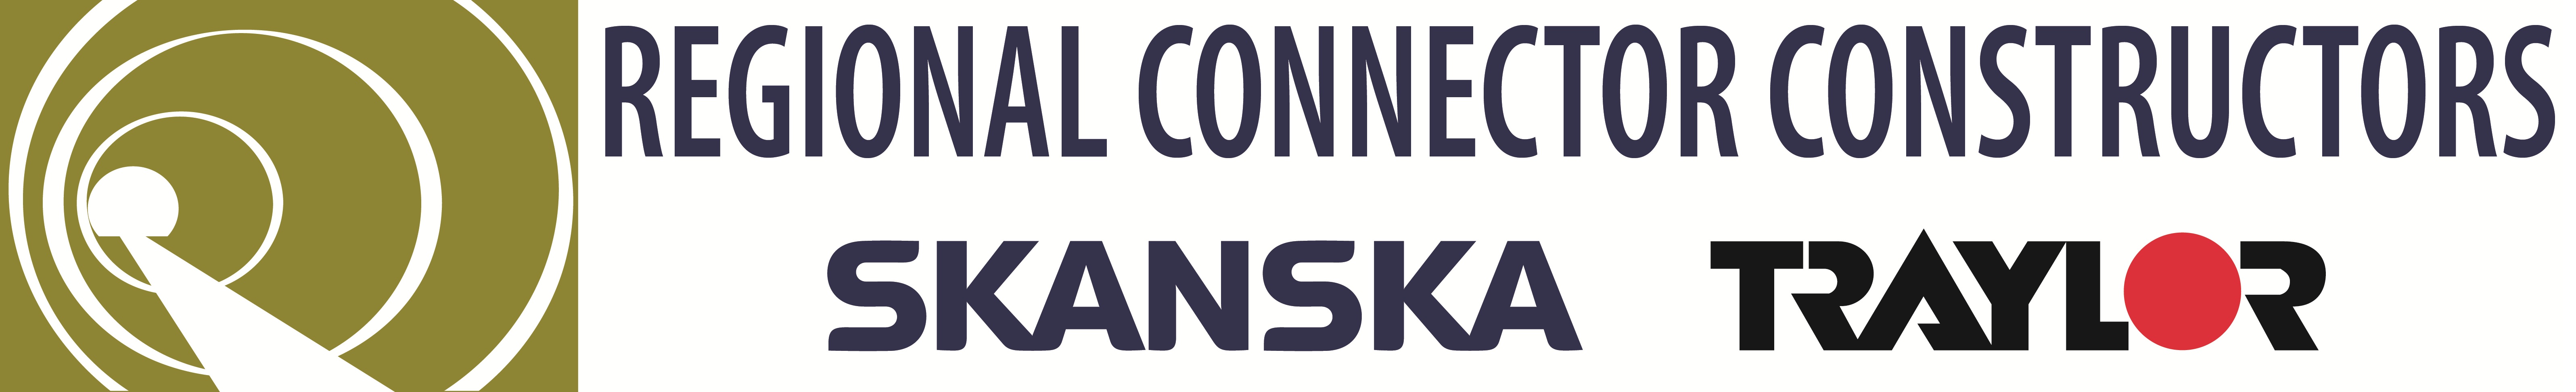 Regional Connector Constructors Logo